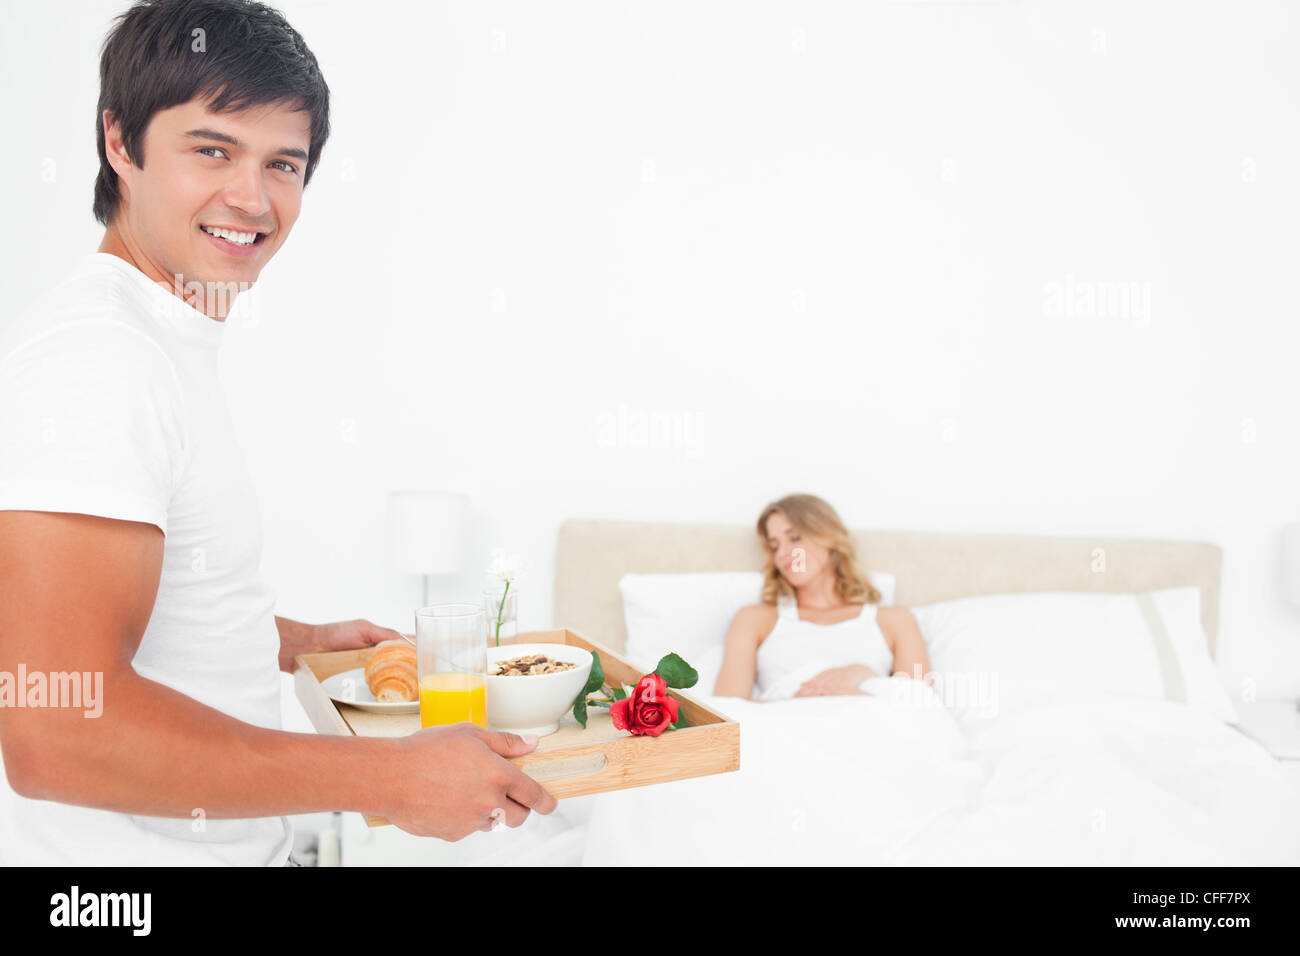 Uomo sorridente come egli porta la donna colazione, la donna dorme Foto Stock